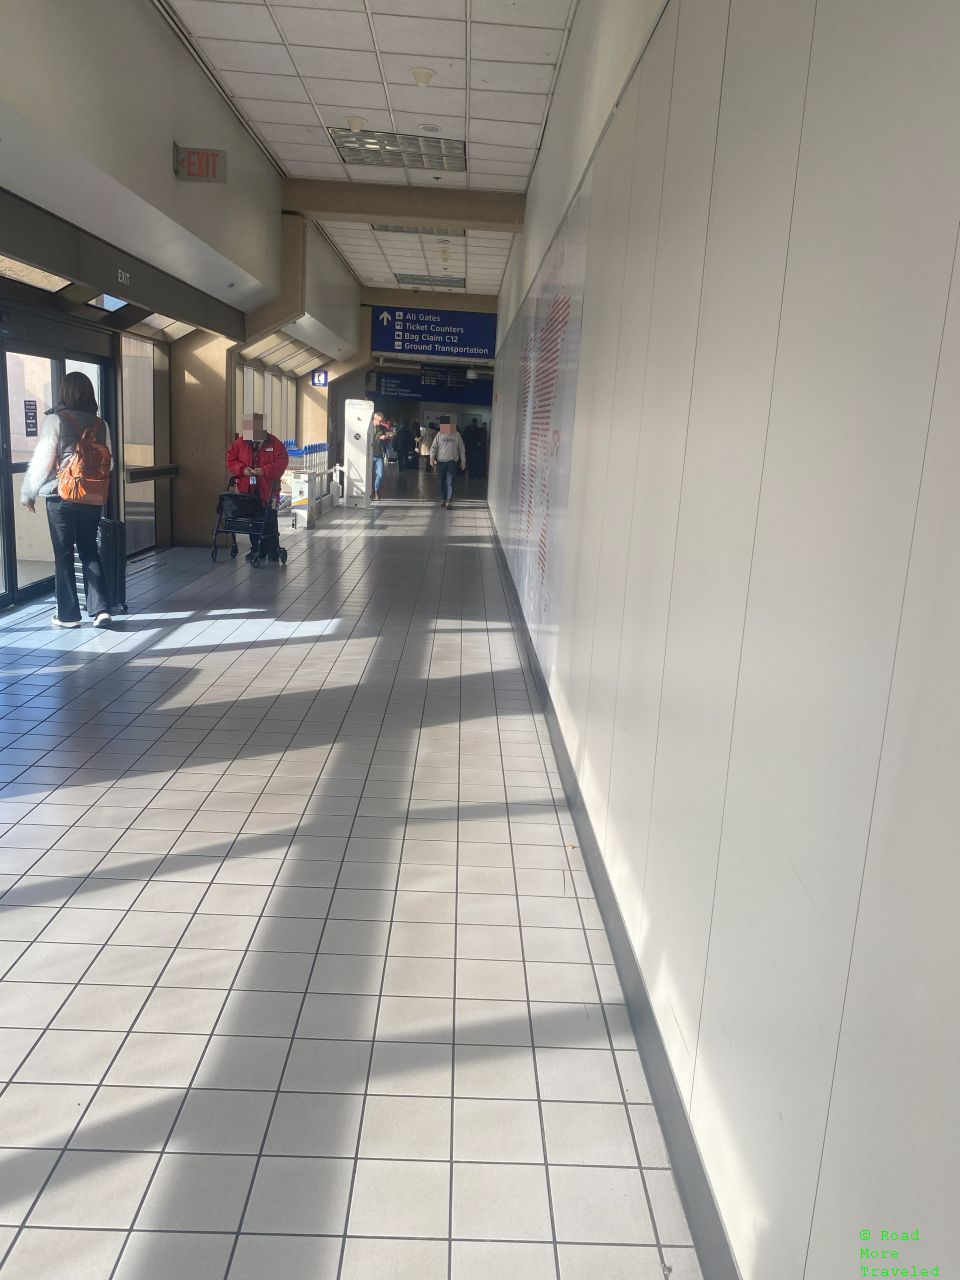 DFW Airport Terminal C arrivals area